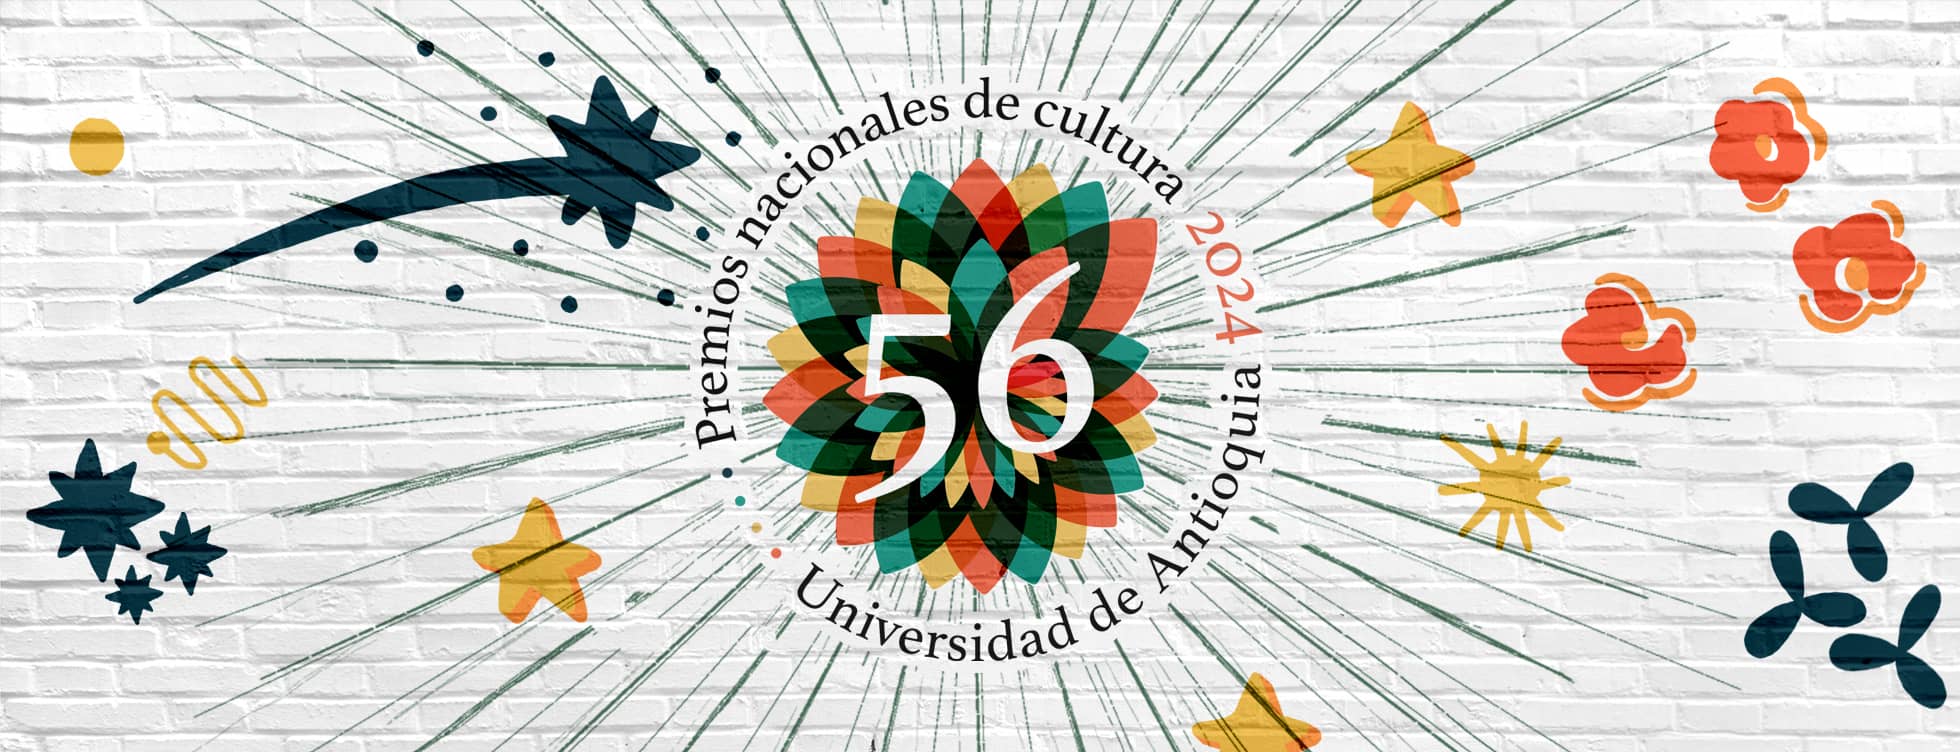 RUA #349, para empezar a celebrar los 220 años de la Universidad de Antioquia